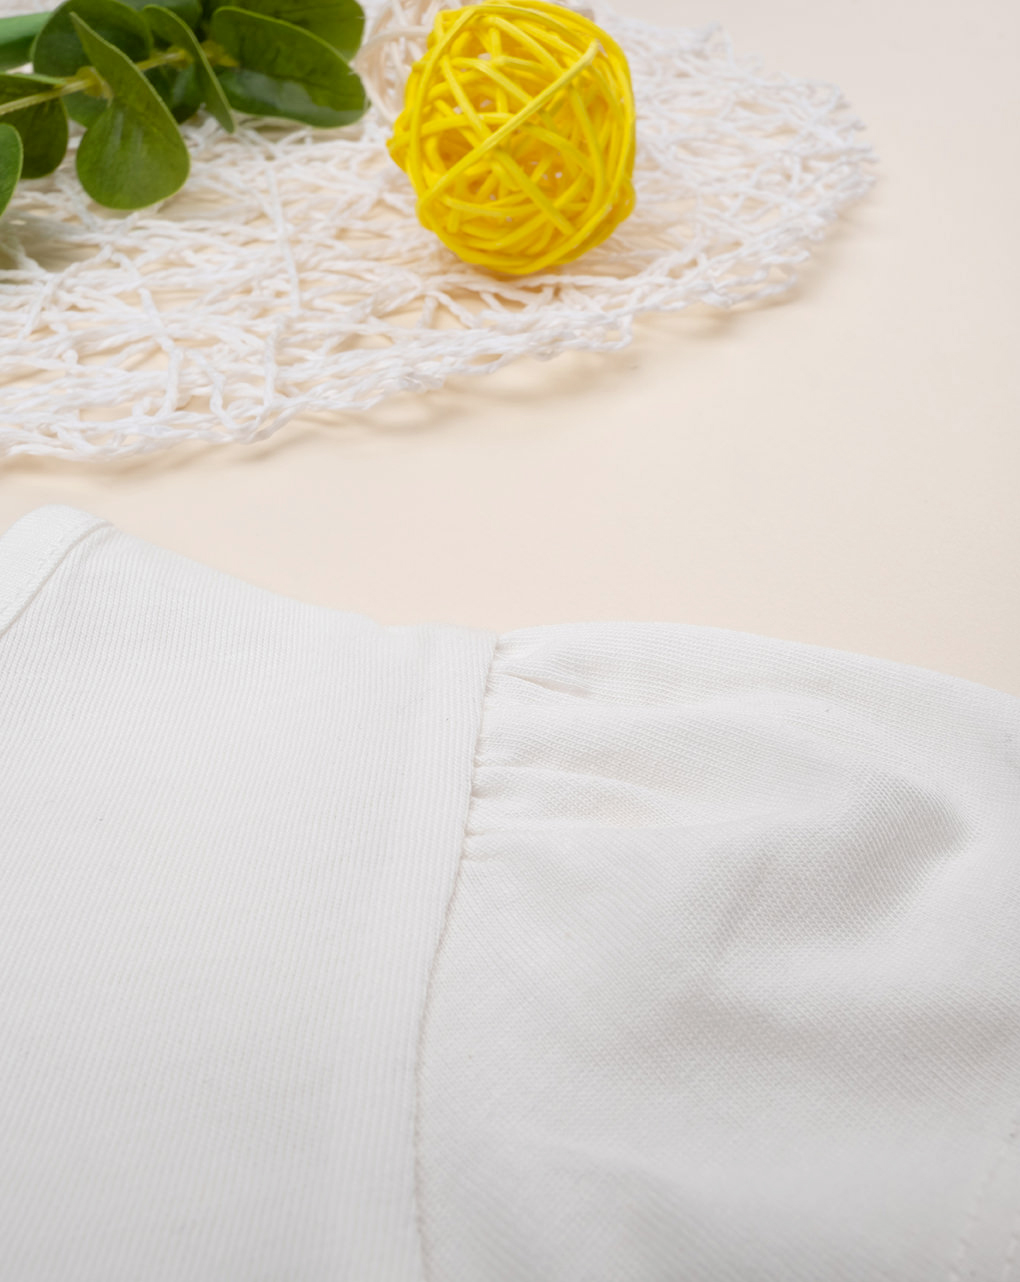 βρεφικό t-shirt λευκό με μελισσούλες για κορίτσι - Prénatal